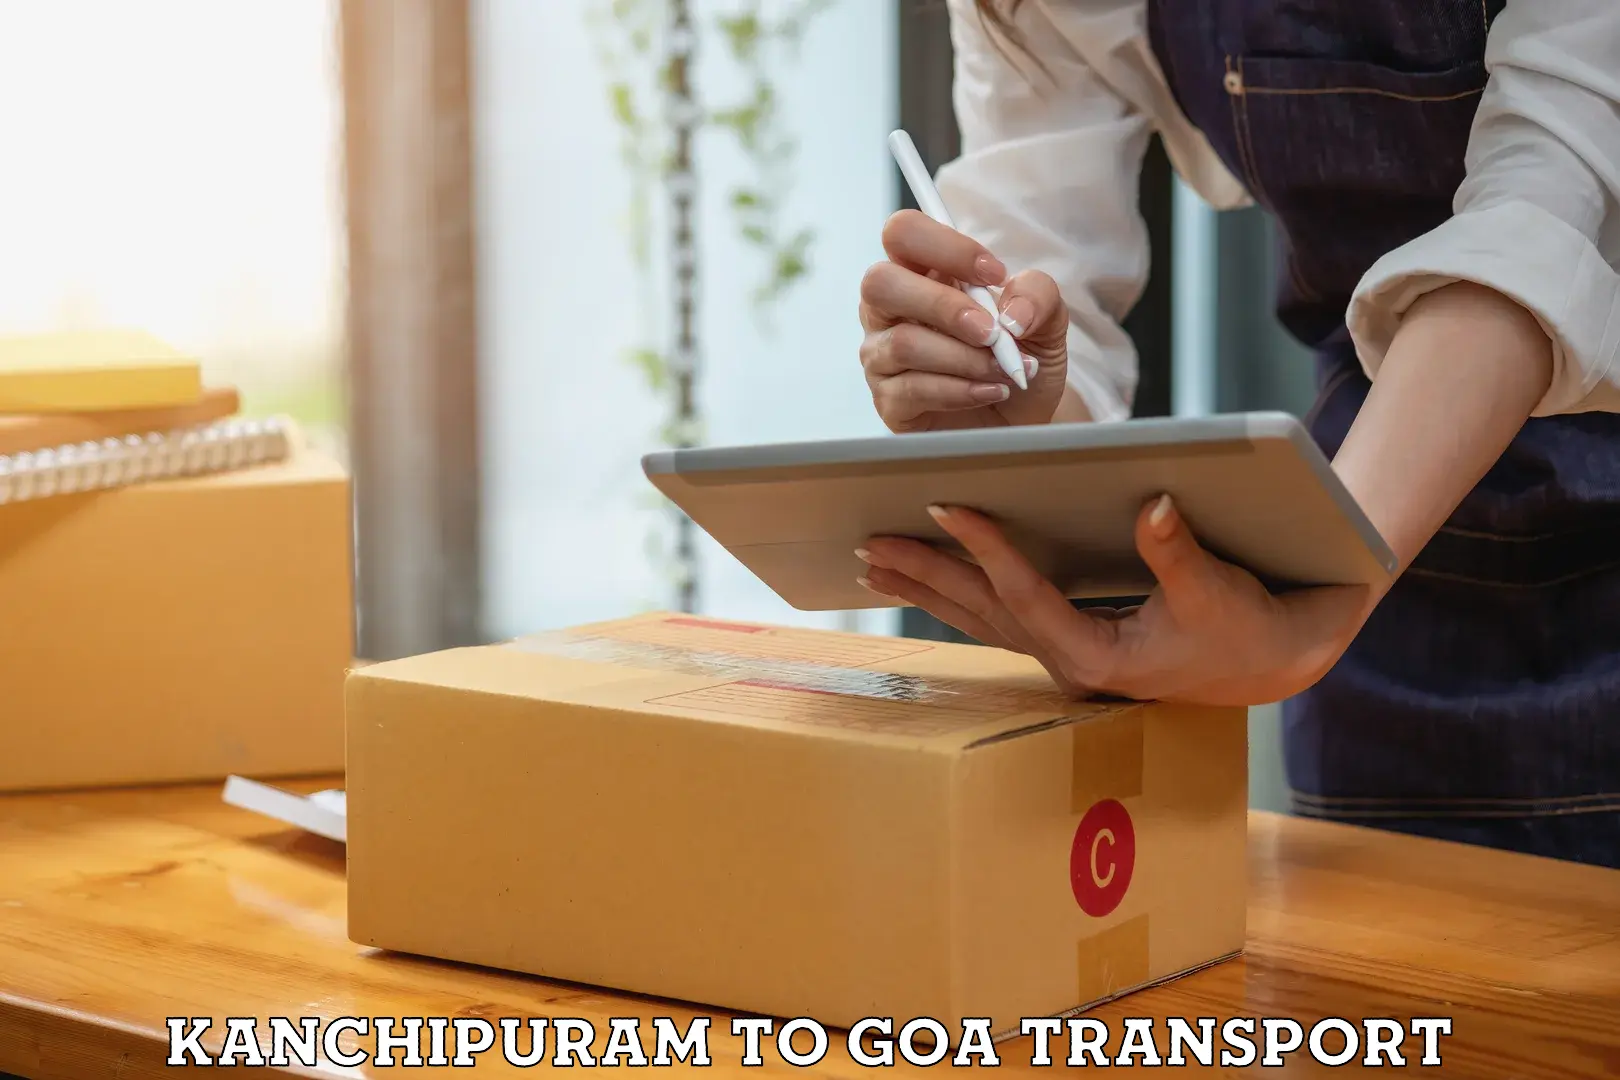 Online transport service Kanchipuram to Vasco da Gama